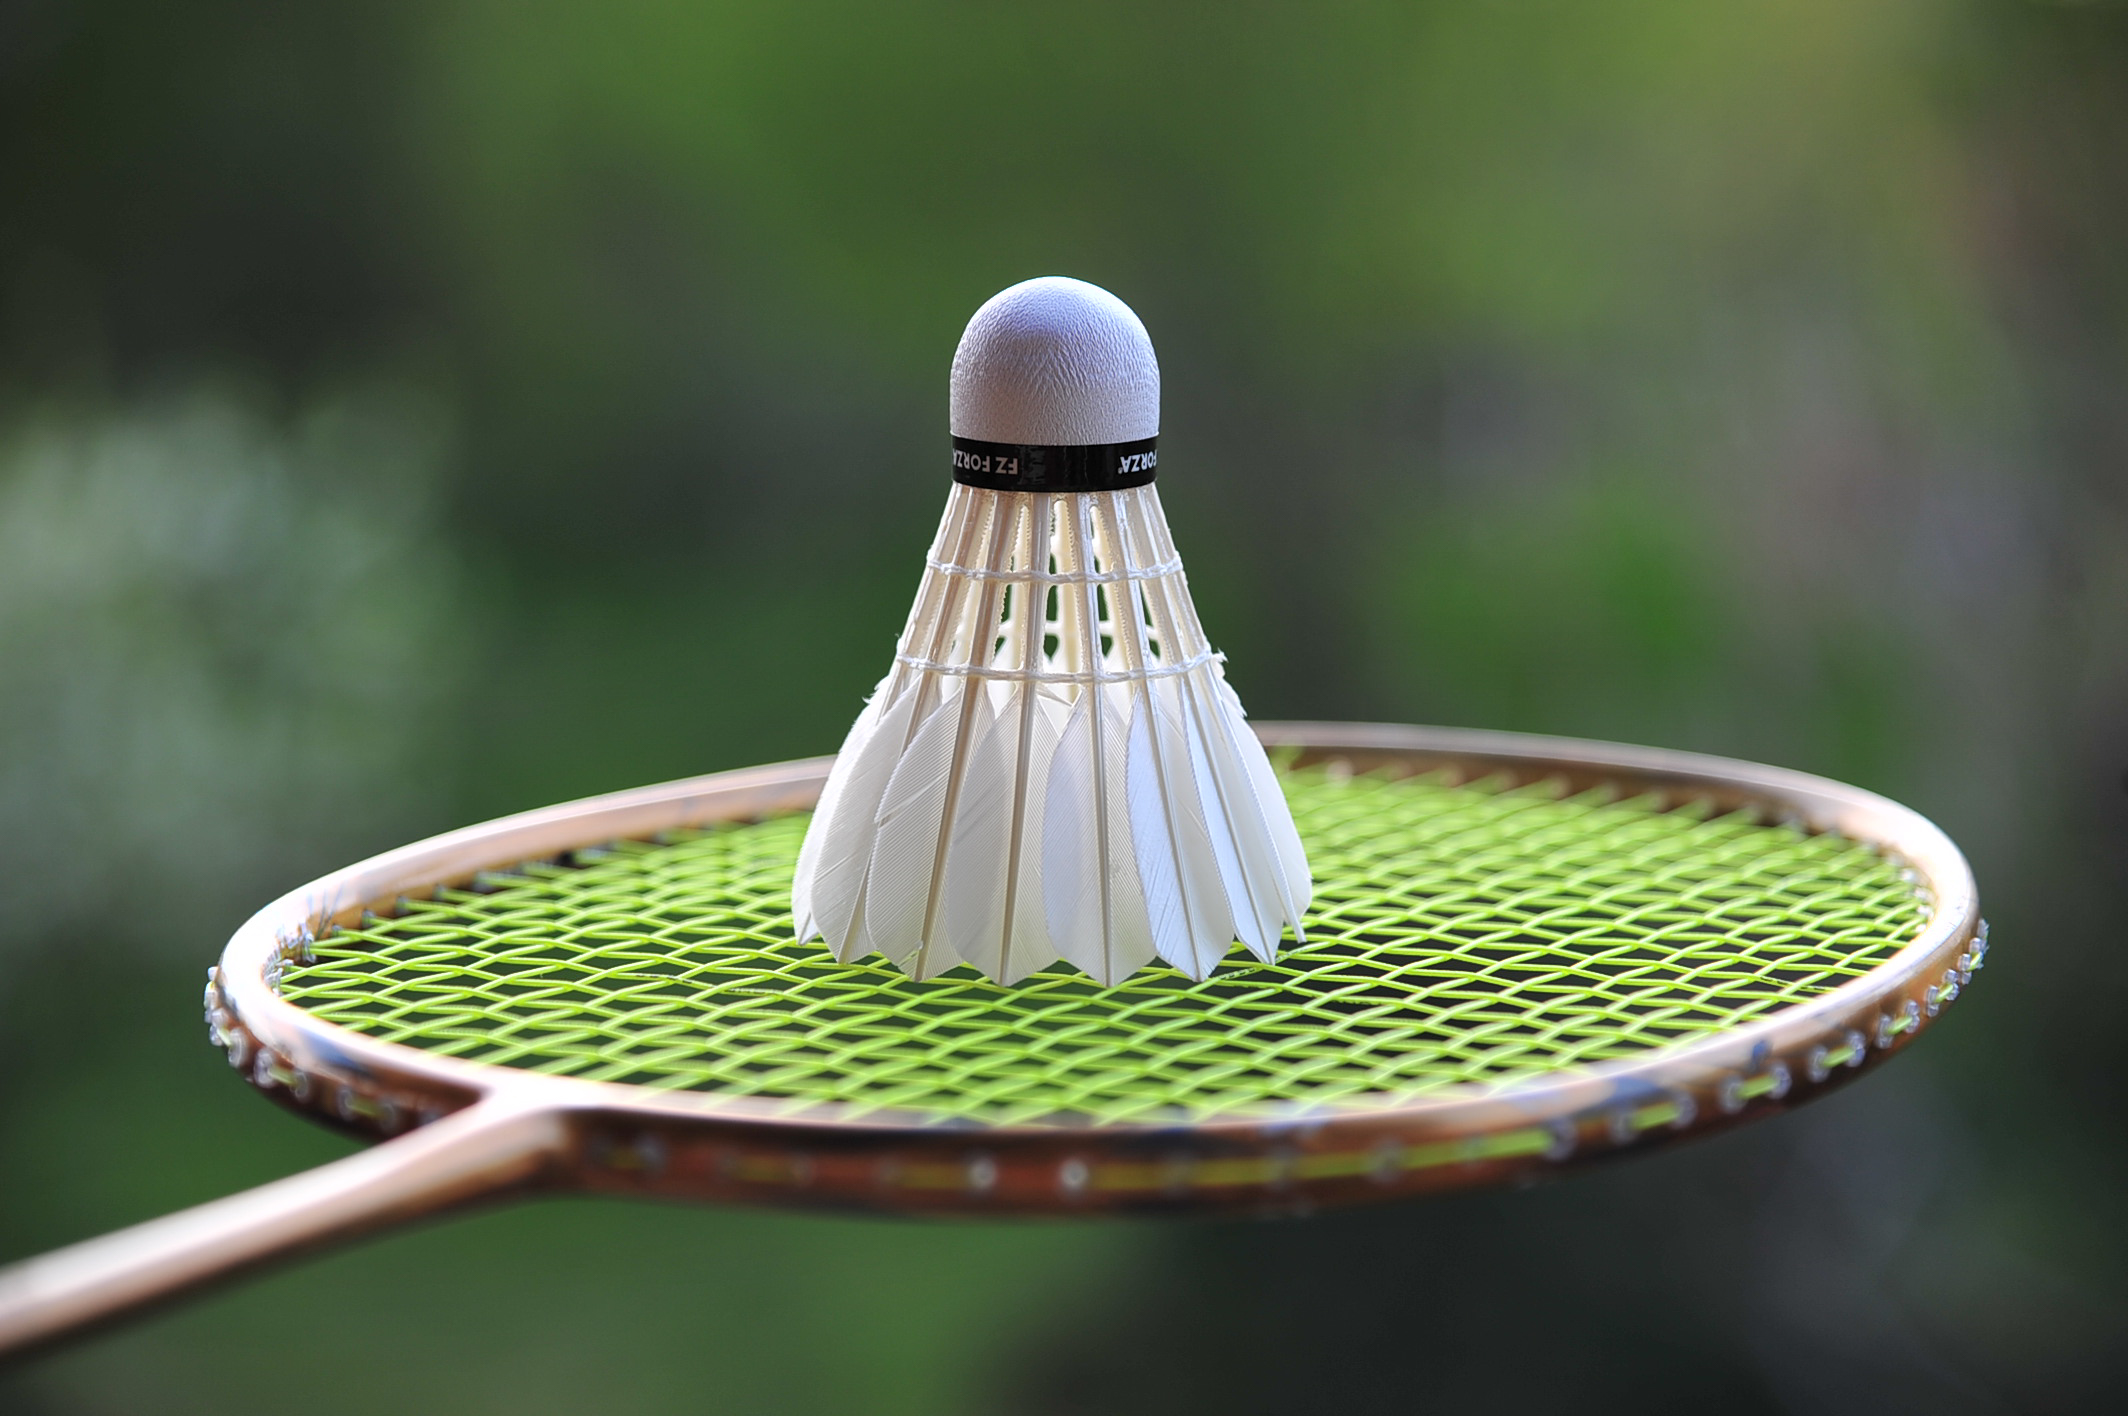 Velkommen til Asker Badmintonklubb - En klubb for topp- og breddeidrett